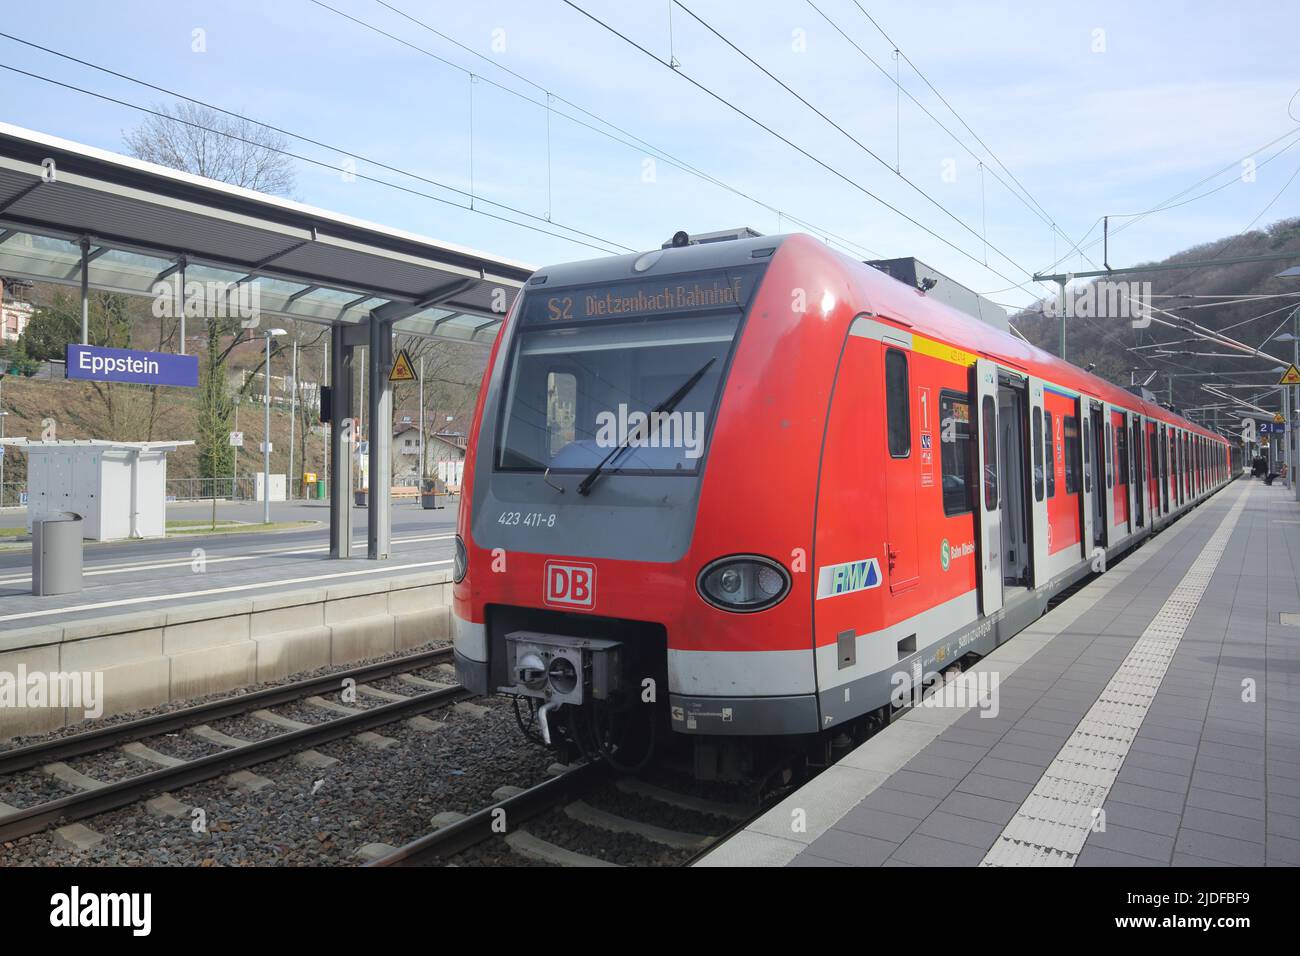 Bahnhof mit S-Bahn in Eppstein, Hessen, Deutschland Stockfoto